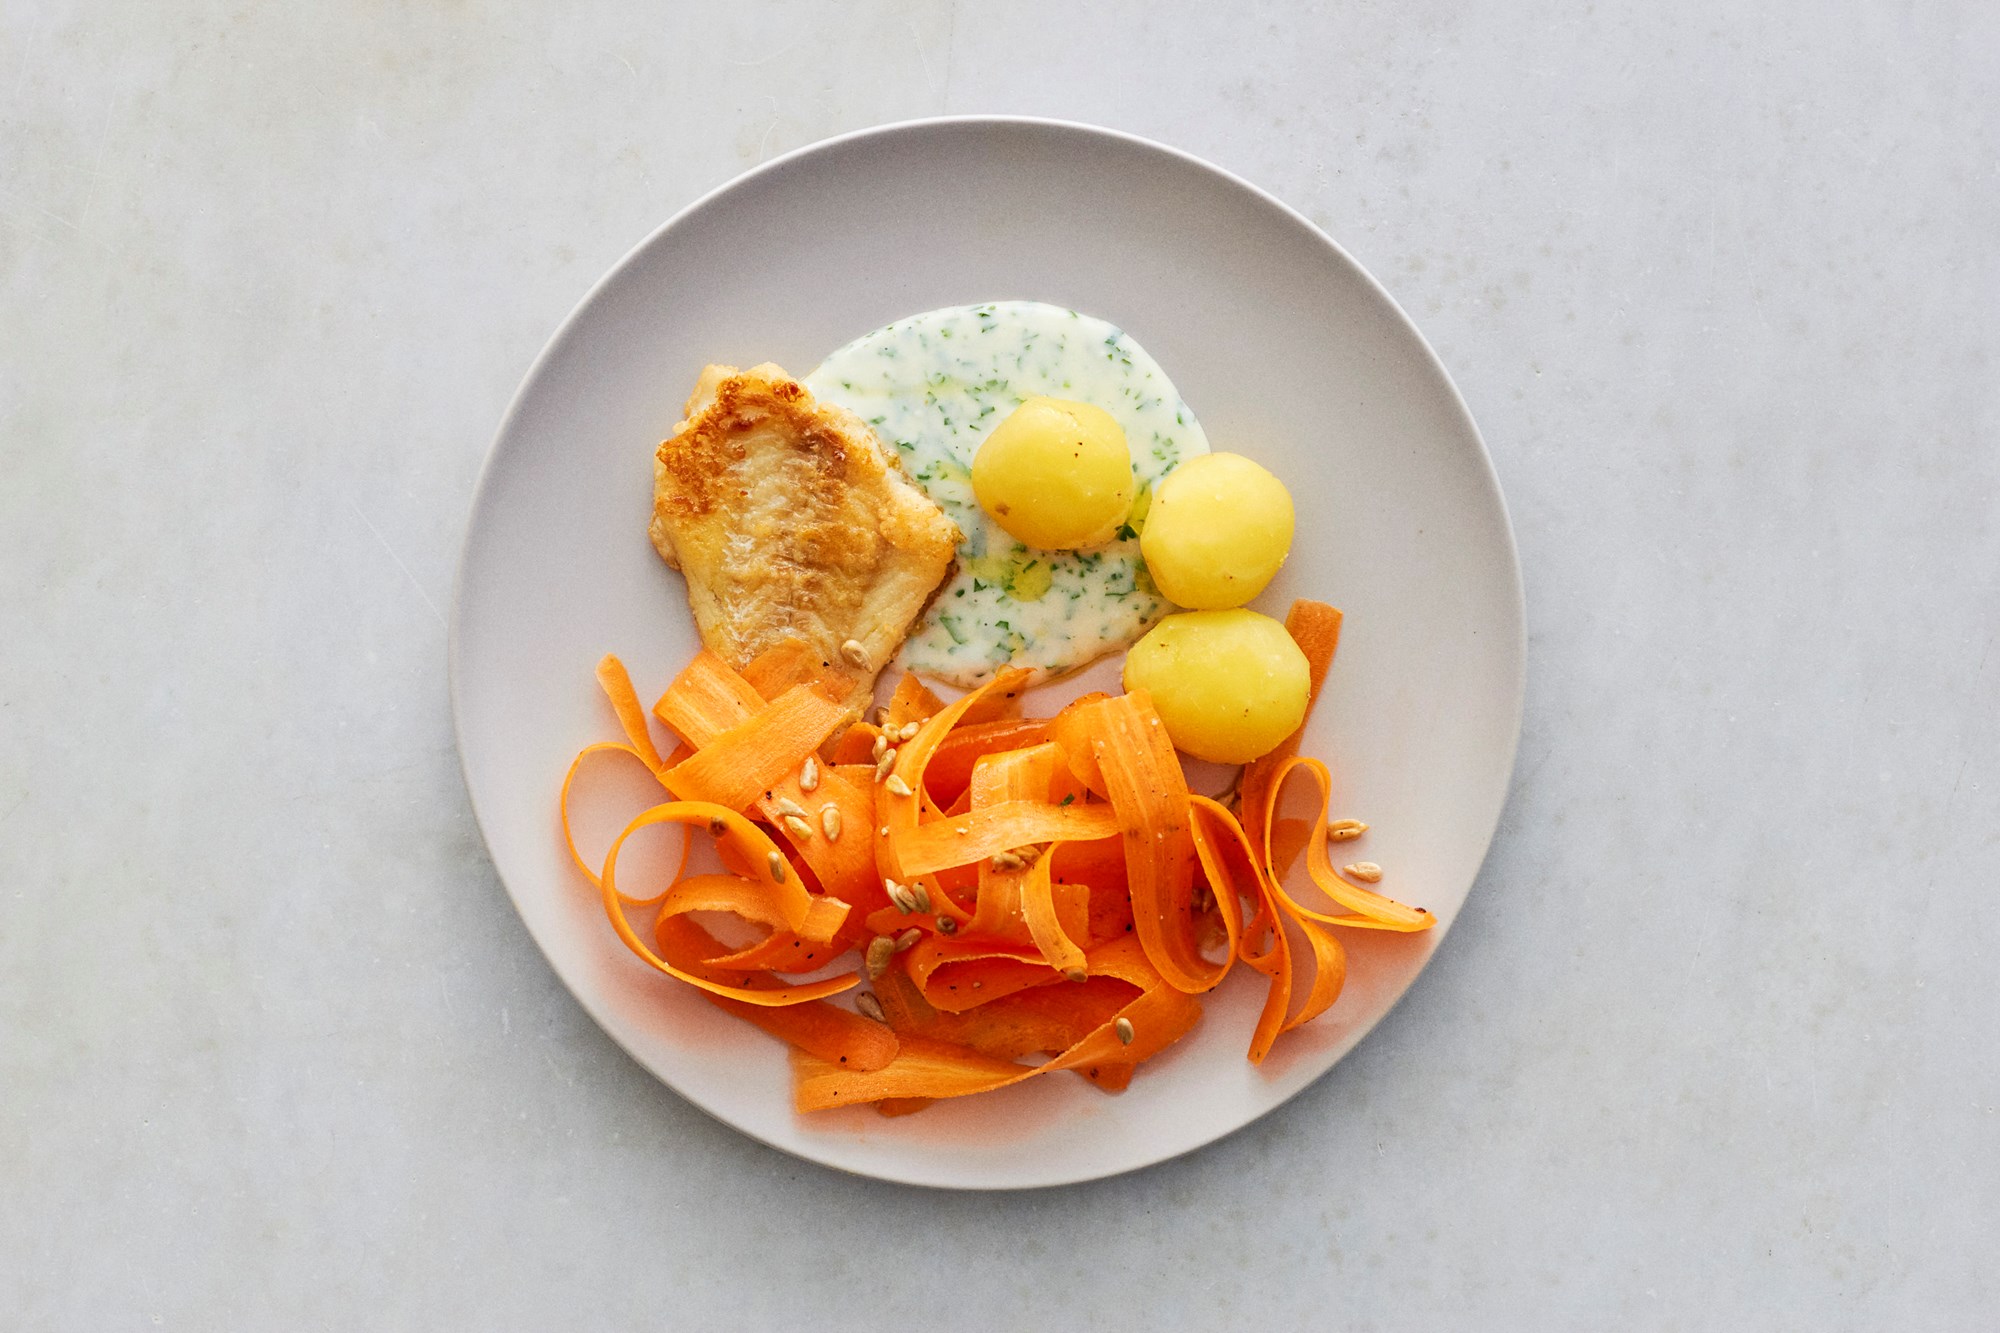 Meunierestegt rødspætte med kartofler, persillesovs og frisk gulerodssalat